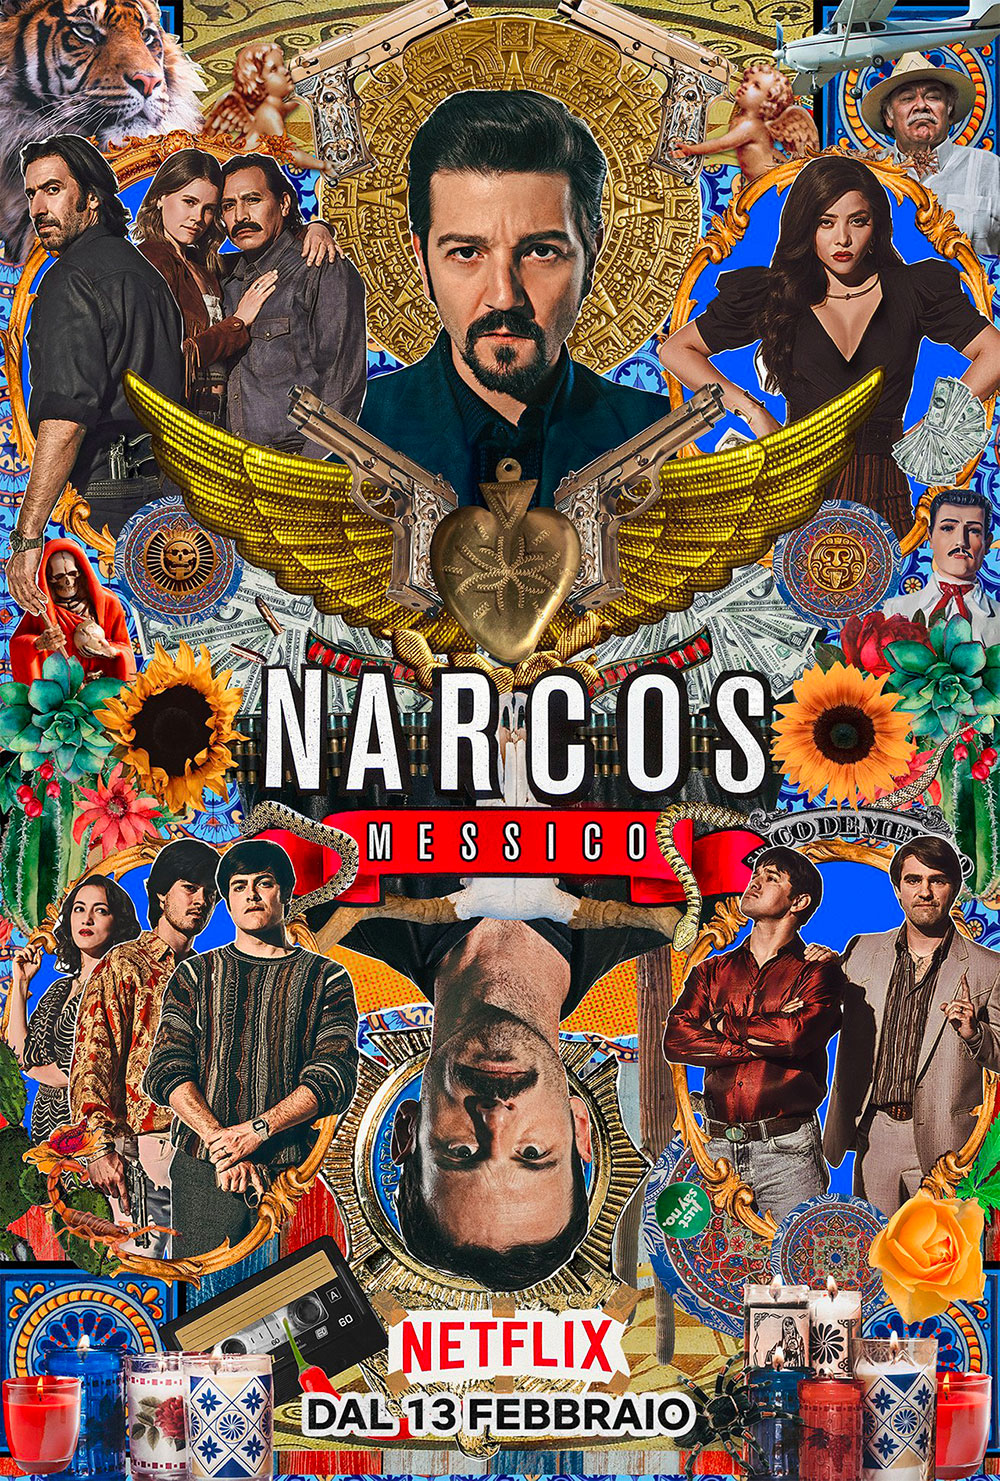  Dall'articolo: Narcos - Messico - Stagione 2, il poster italiano della serie.